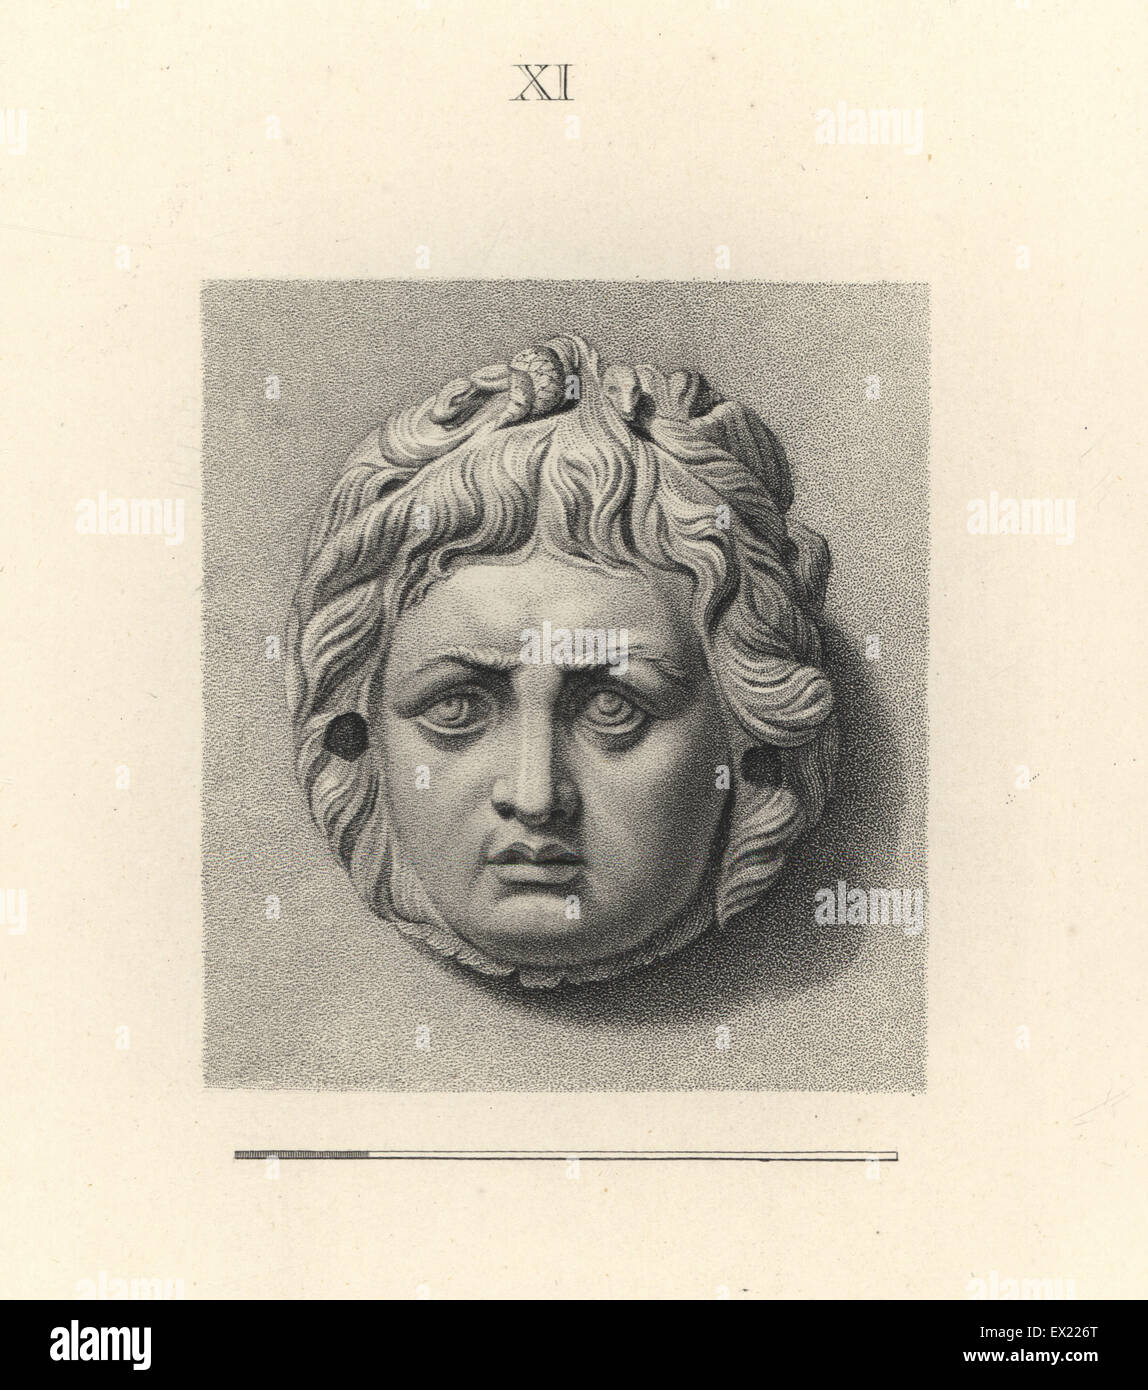 La tête de la Gorgone Méduse, avec serpent dans ses cheveux. La gravure sur cuivre par Francesco Bartolozzi à partir de 108 plaques de pierres antiques, 1860. Les pierres étaient de la collection du duc de Marlborough. Banque D'Images